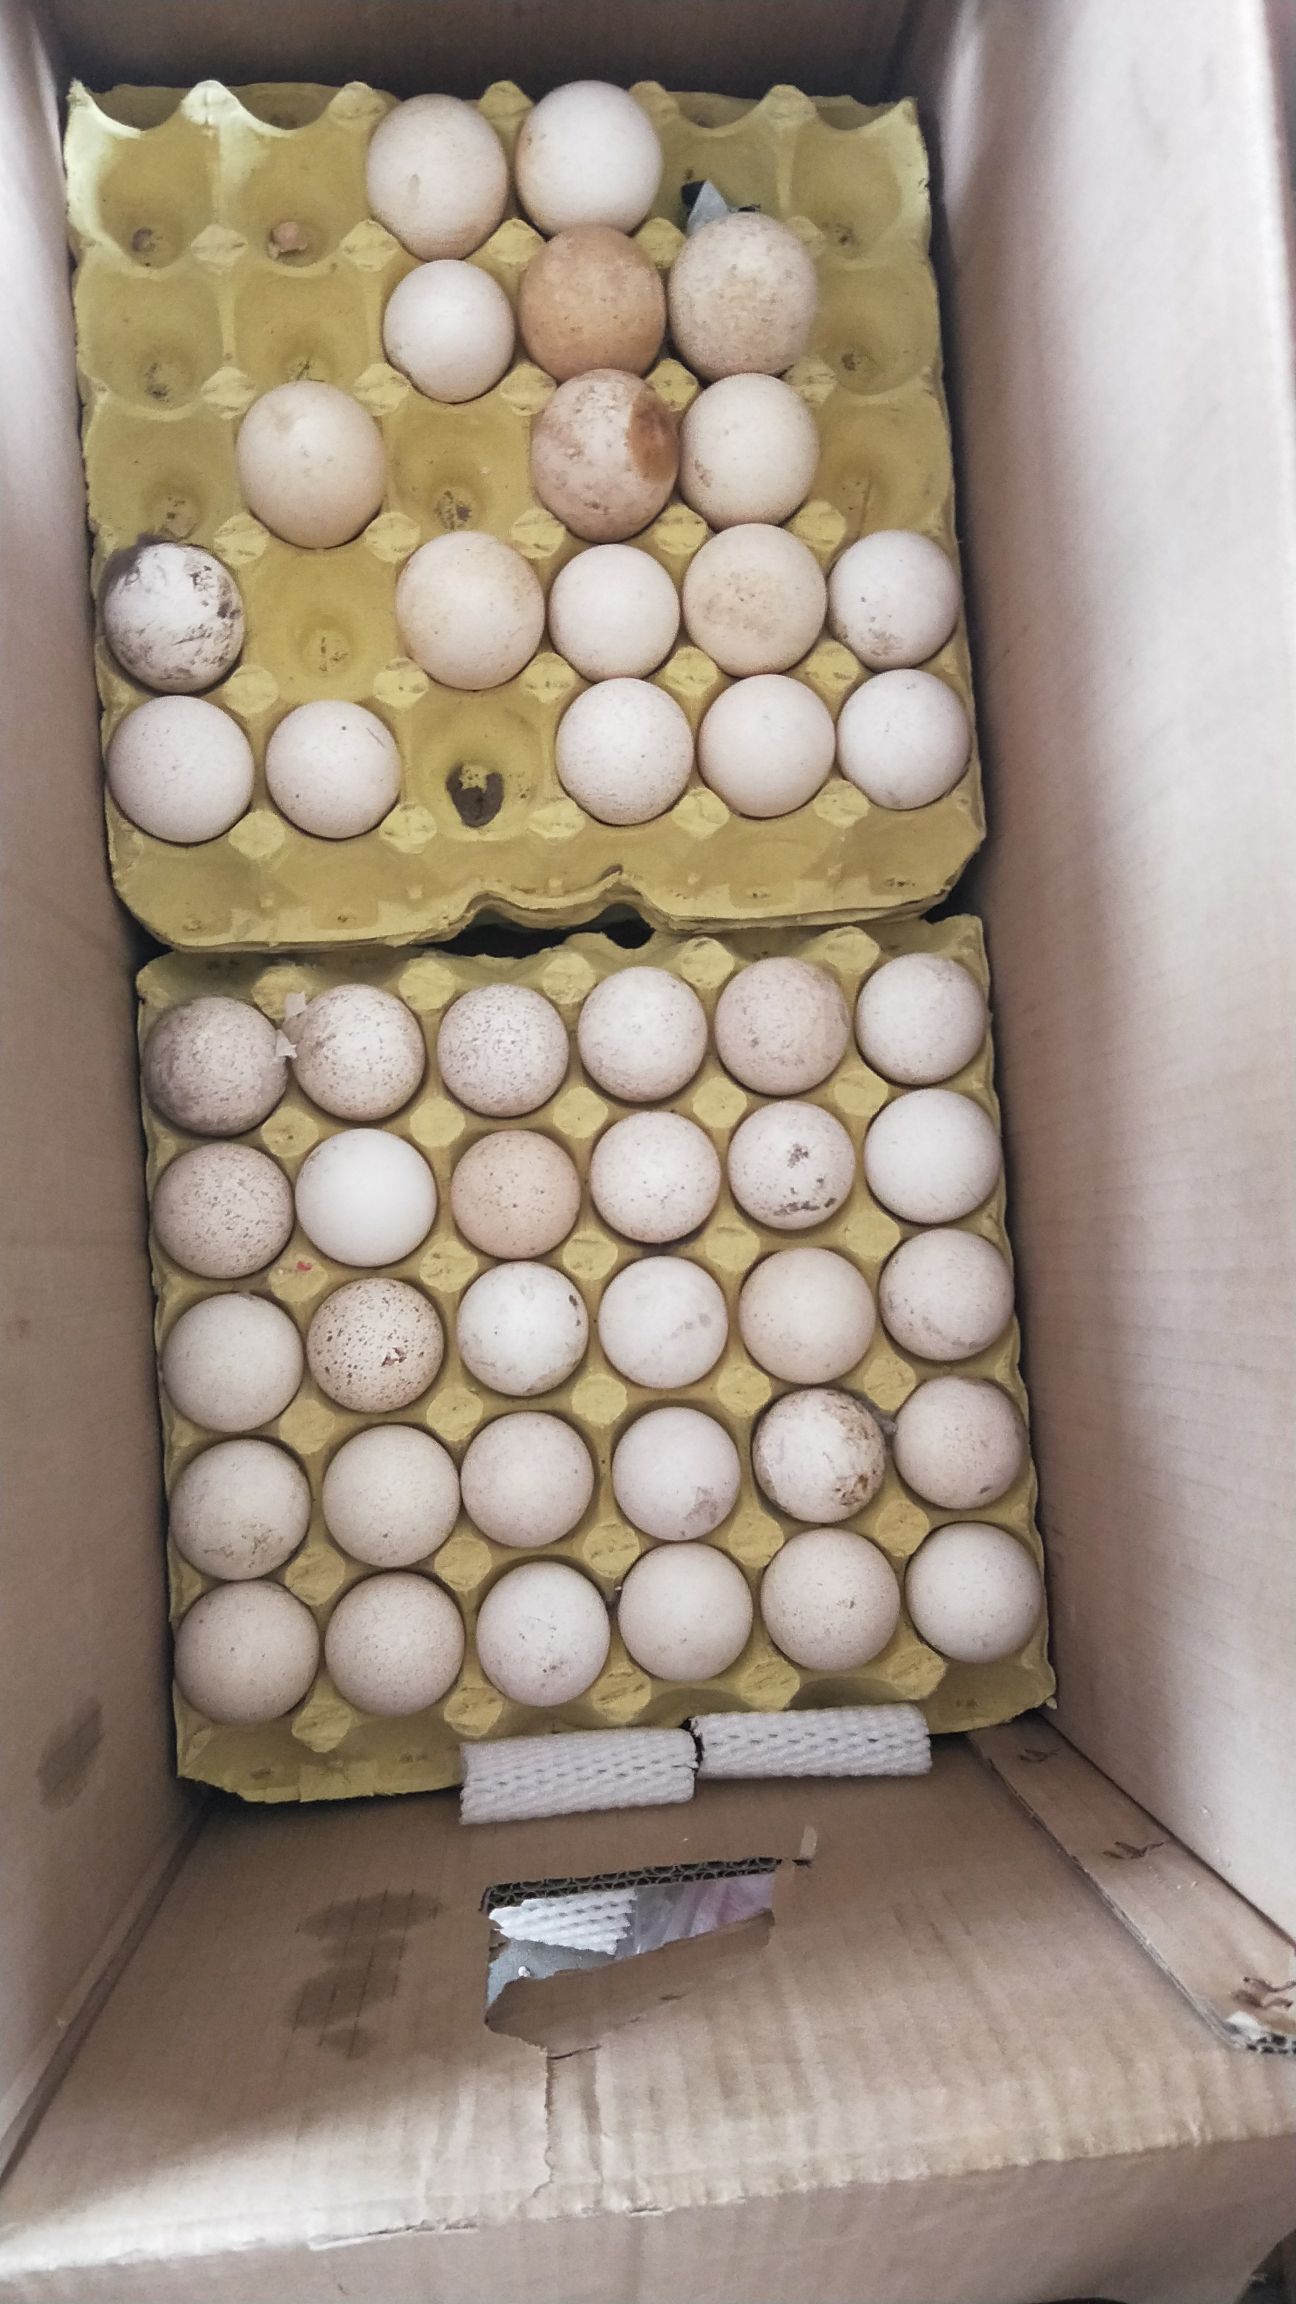 济南 火鸡蛋 可孵化可食用 青铜鸡蛋 贝蒂娜鸡蛋 尼古拉鸡蛋